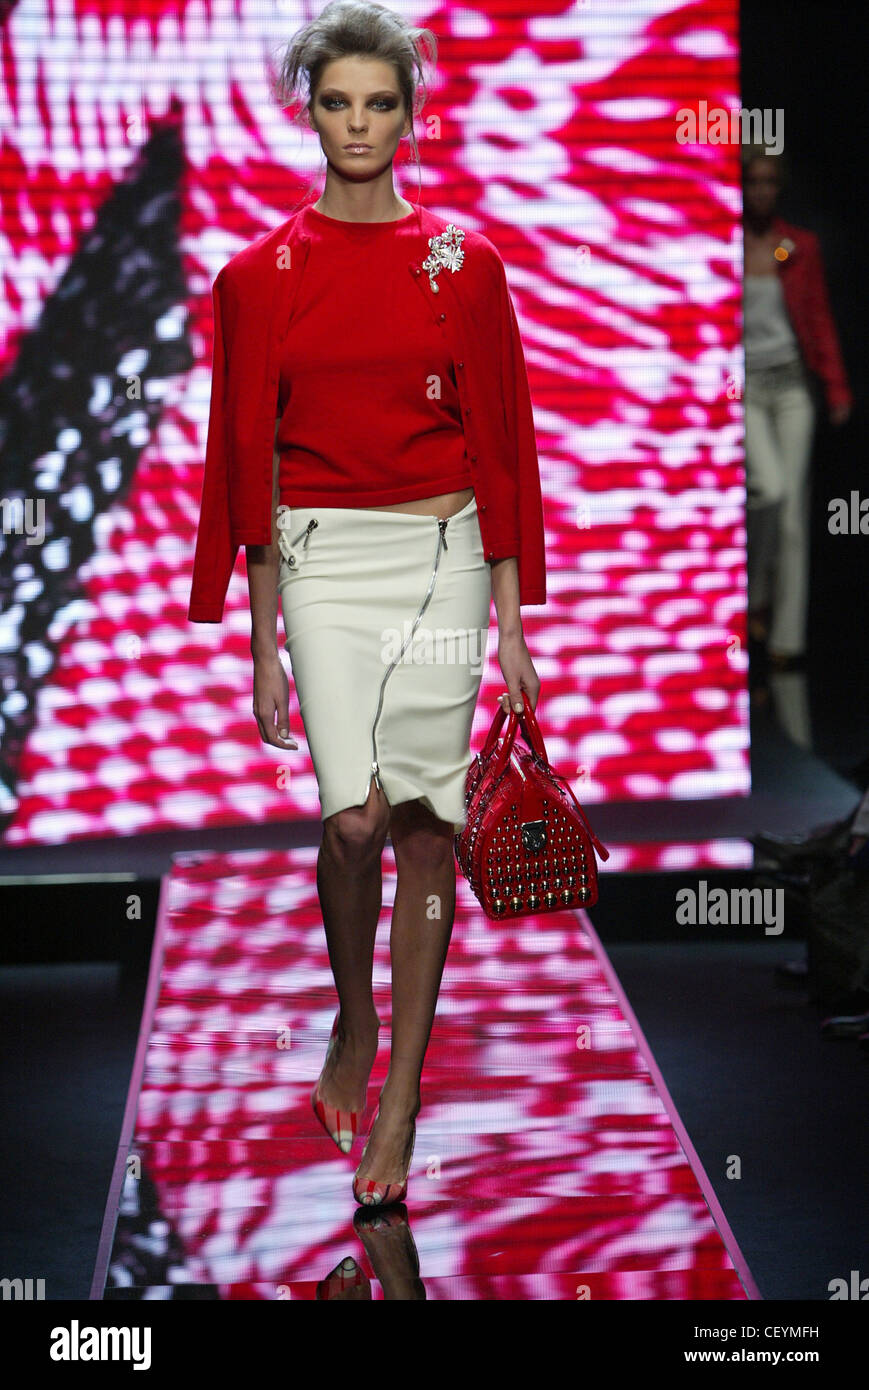 Versace Milan Automne Hiver Modèle bouffant brunette cheveux visage, wearing red top, red cardigan drapé sur les épaules de l'argent Banque D'Images